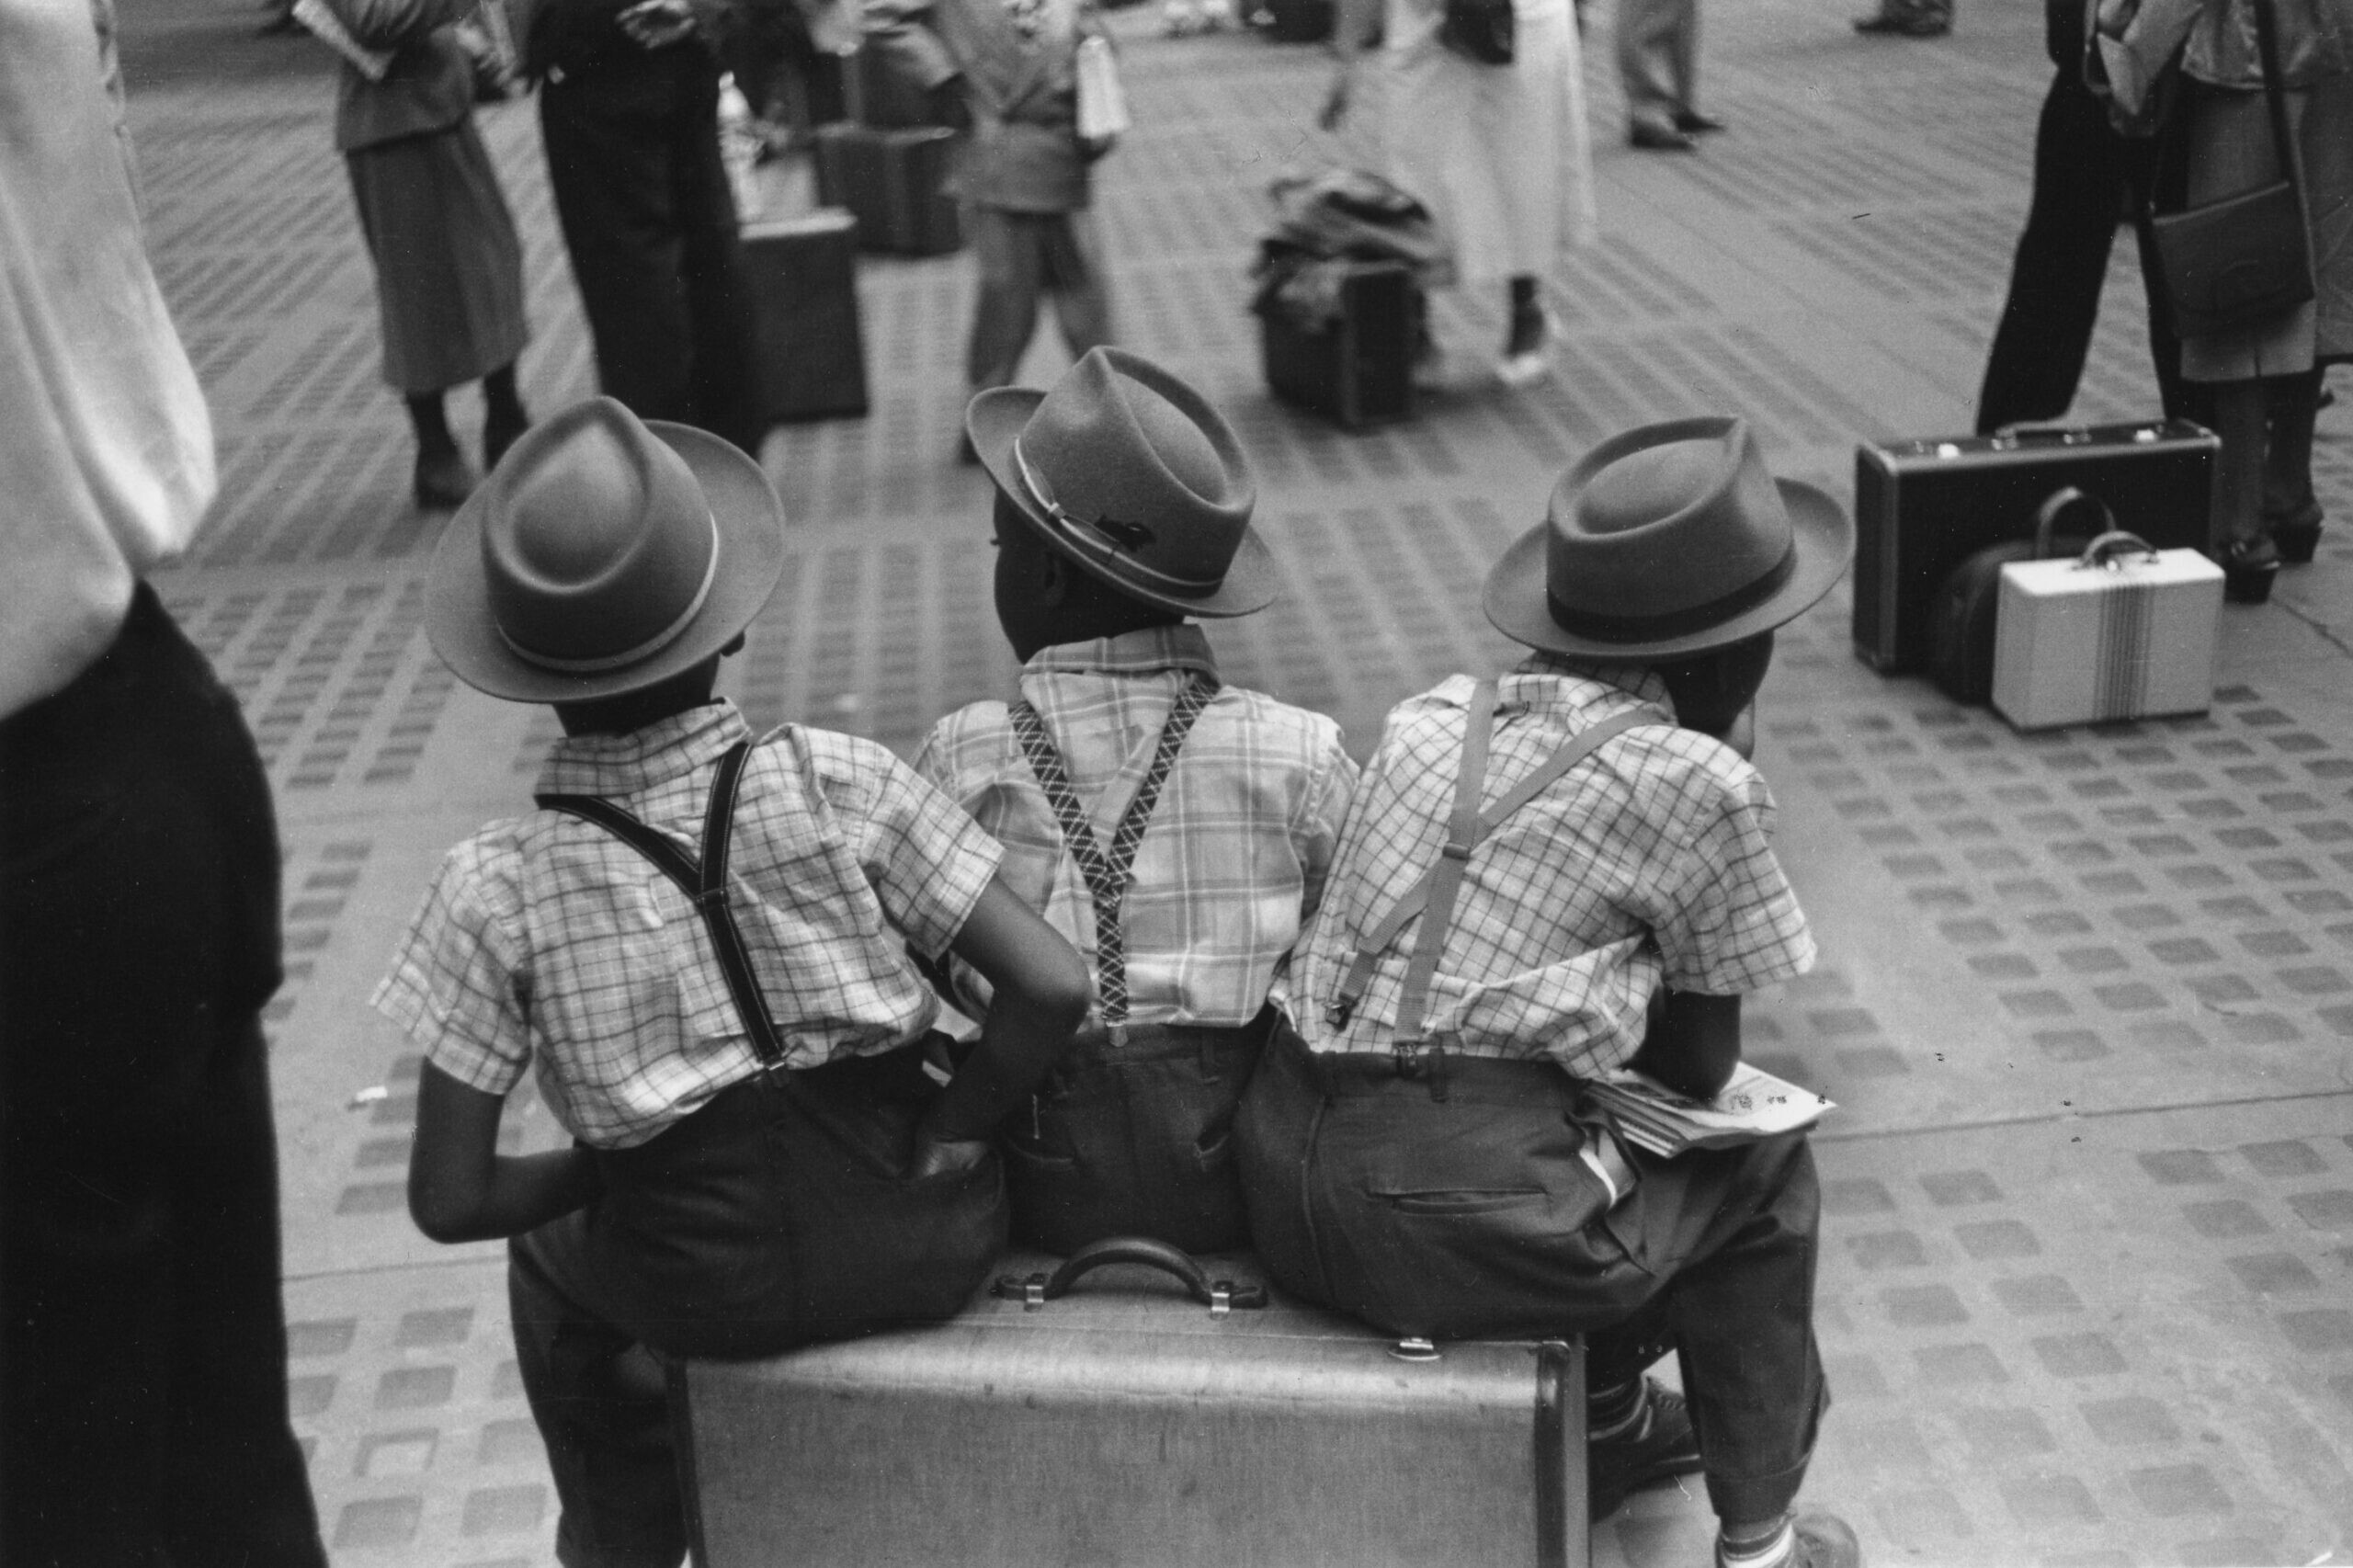 Пенсильванский вокзал, мальчики на чемоданах, Нью-Йорк, 1948 год. Фотограф Рут Оркин